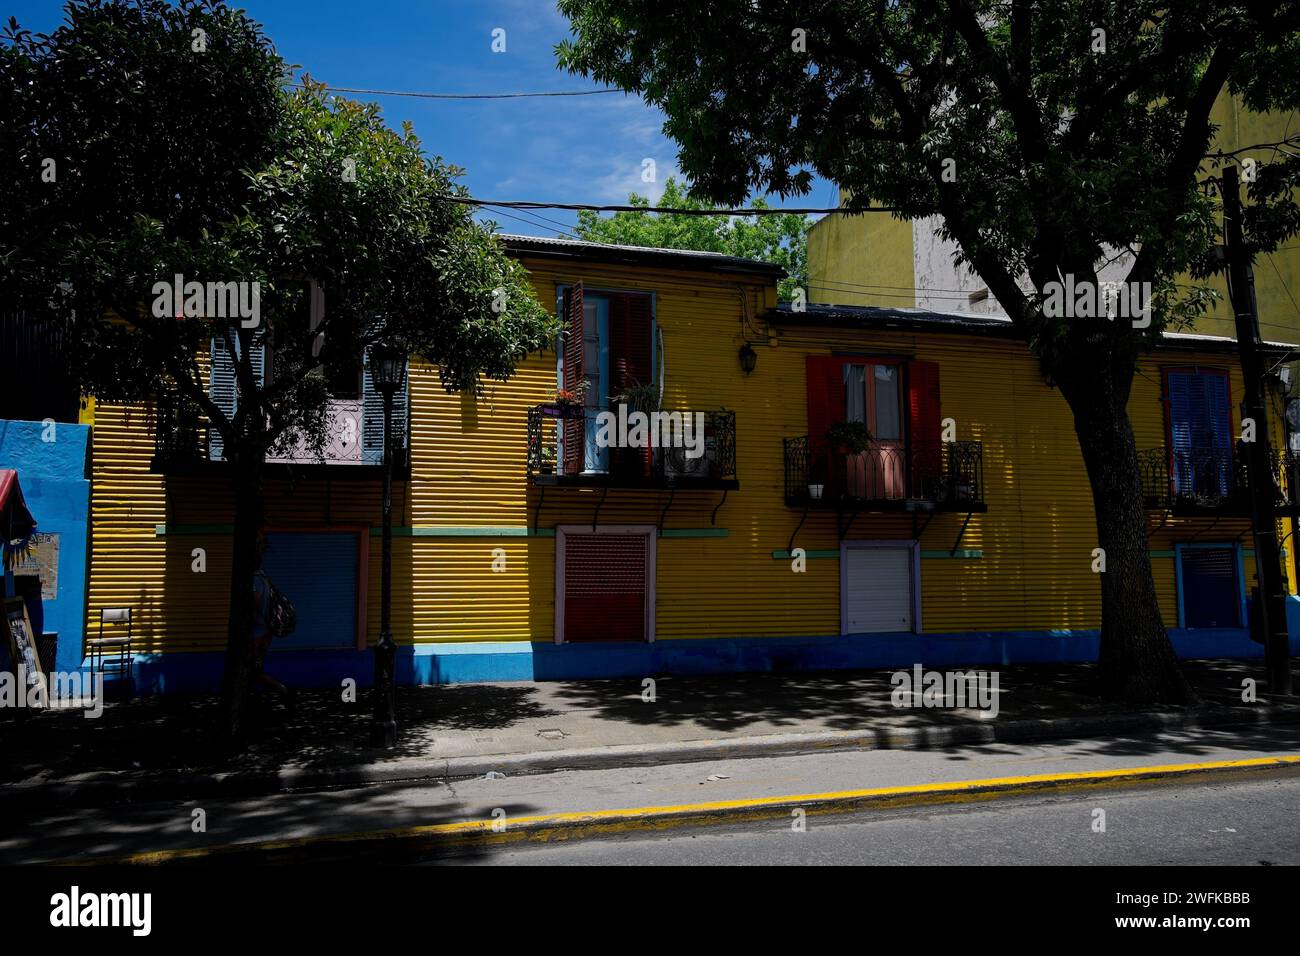 La Boca ist ein Arbeiterviertel mit farbenfrohen Attraktionen in der Nähe des Riachuelo River. Steakhäuser und Straßenkünstler umgeben Caminito. Schattige Bäume Stockfoto